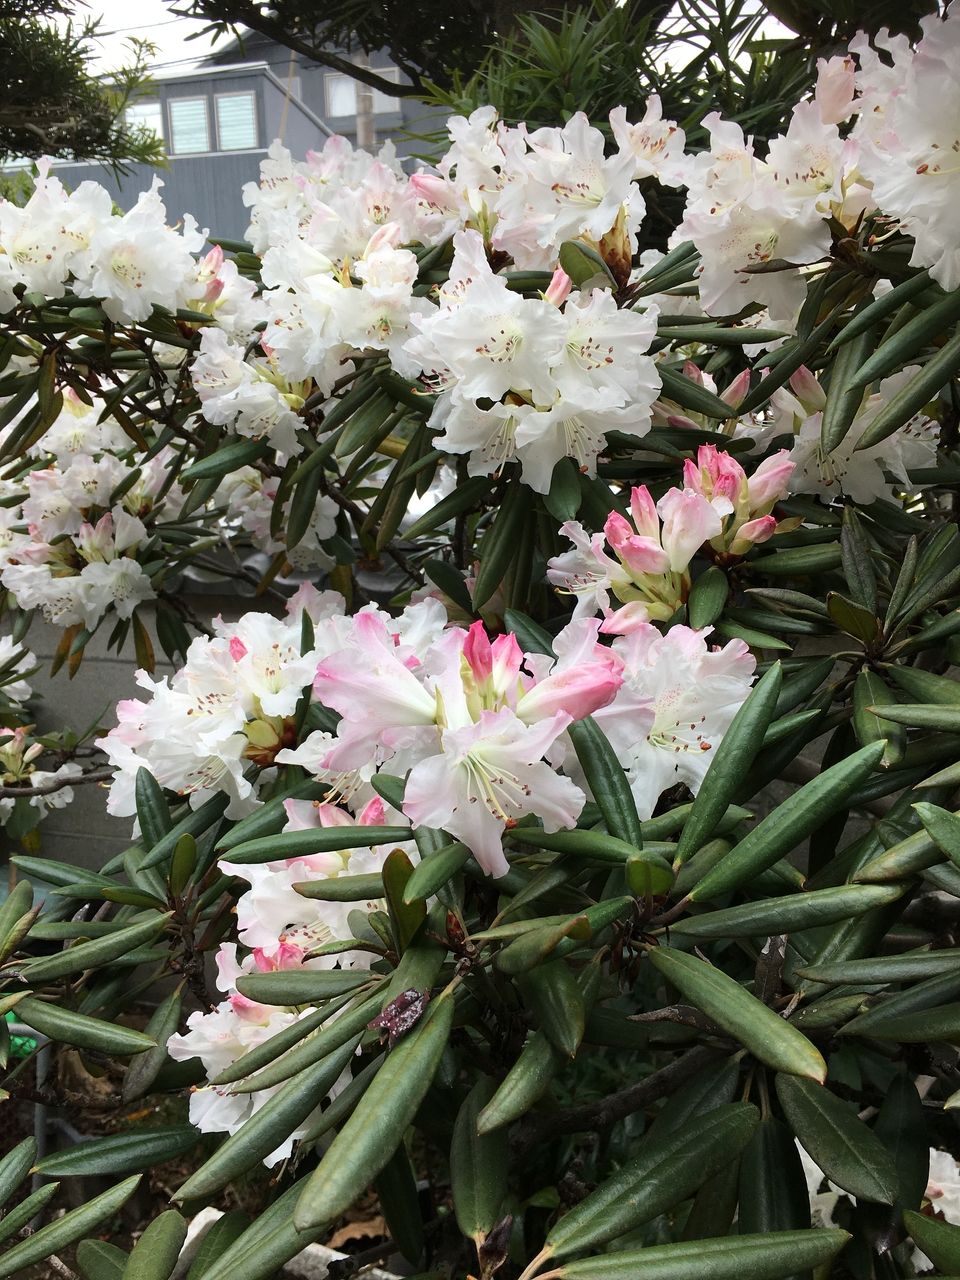 今年も事務所の庭に春の訪れを告げてくれる草花が少しずつ花開いてきました。シャクナゲの花が咲き始めツツジも蕾が少しづつふくらみ始めました。小さな草花も花をつけています。自然の恵みと、営みの偉大…